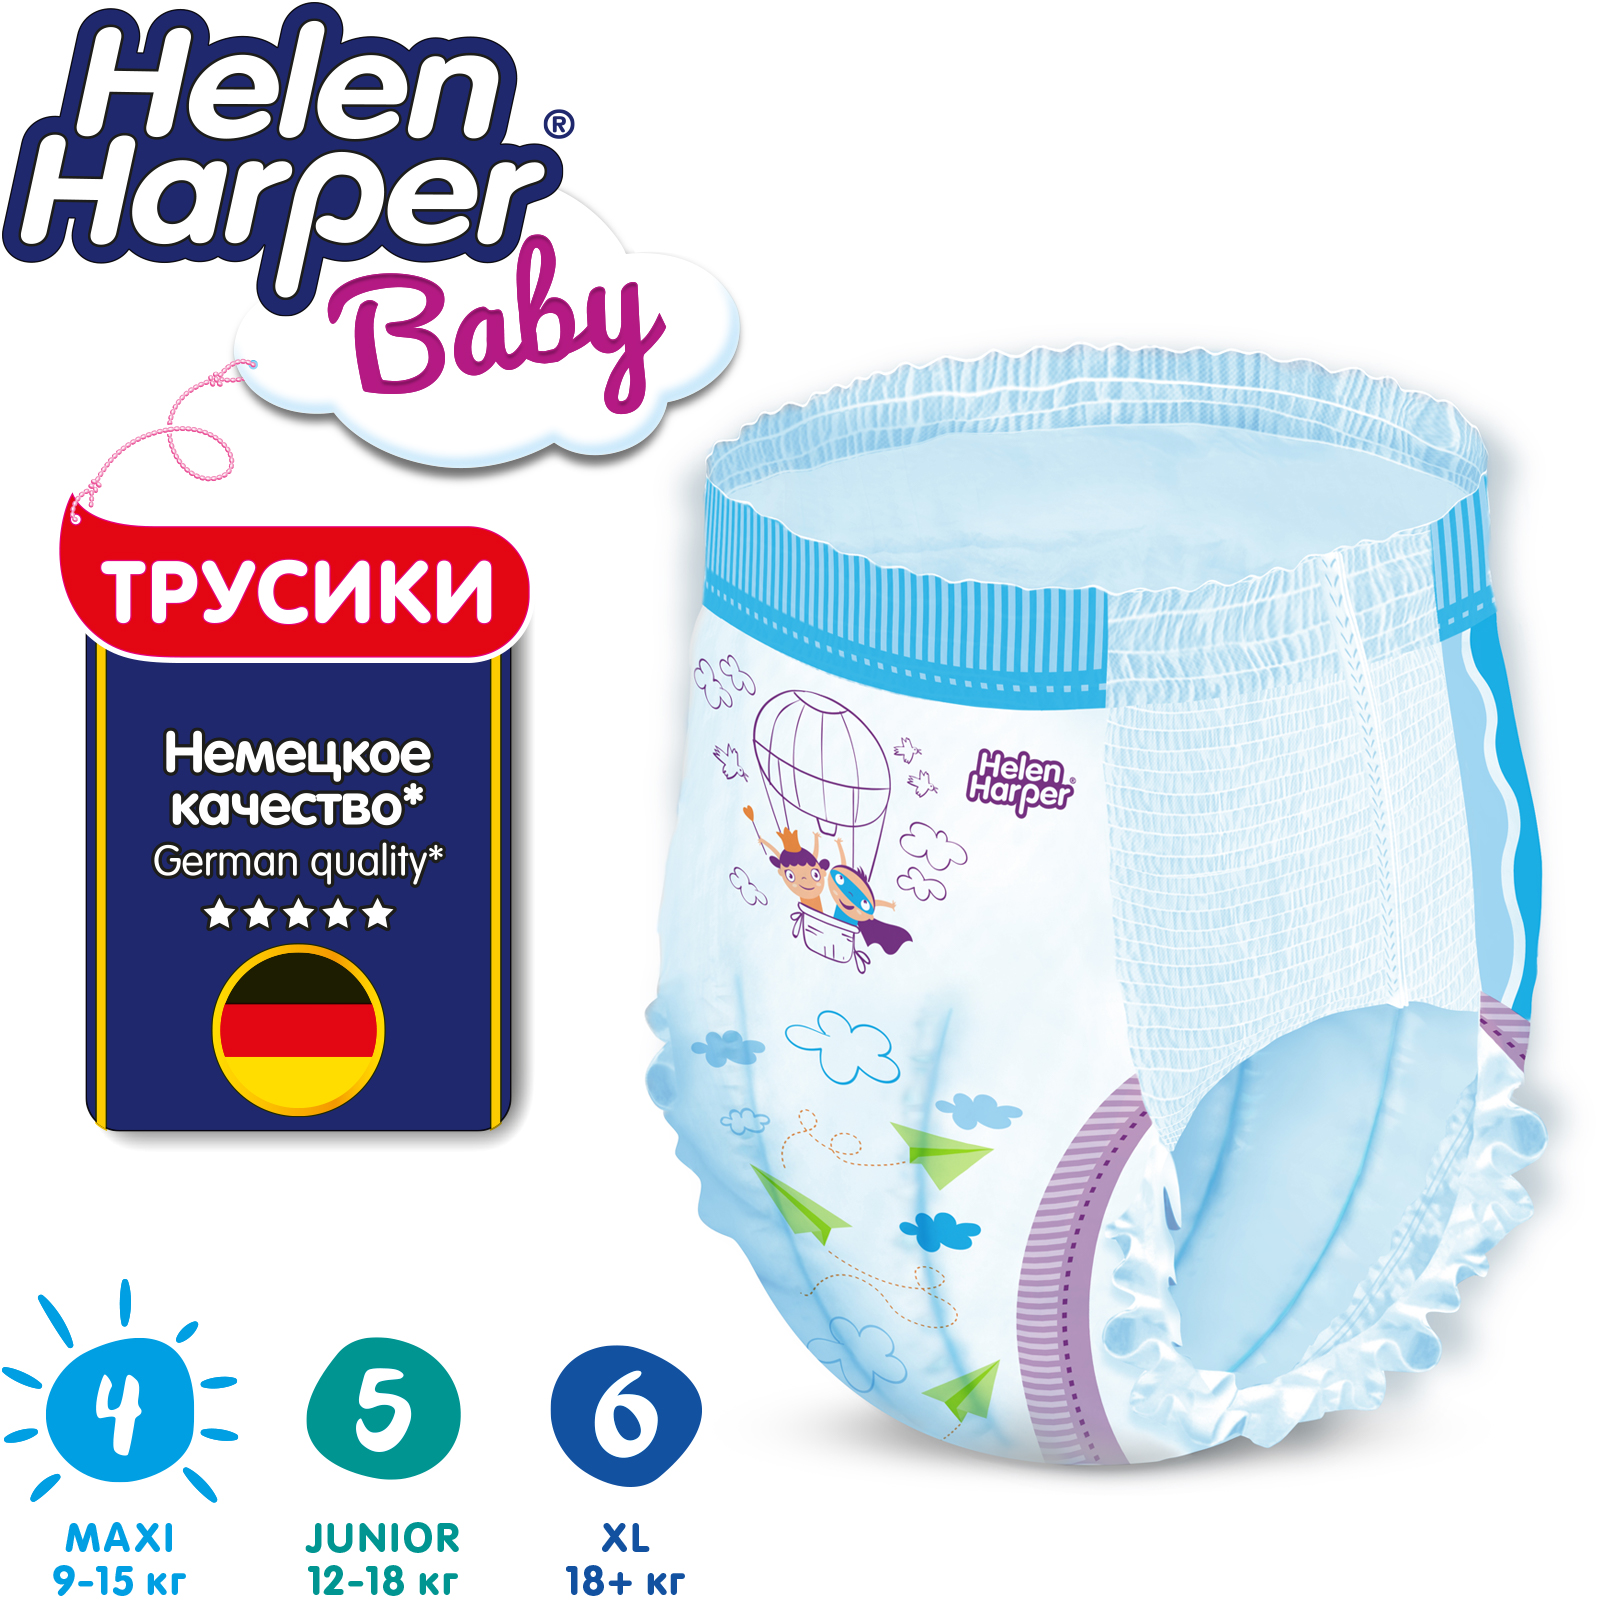 Трусики-подгузники детские Helen Harper Baby размер 4/Maxi 9-15 кг 80 шт. - фото 4